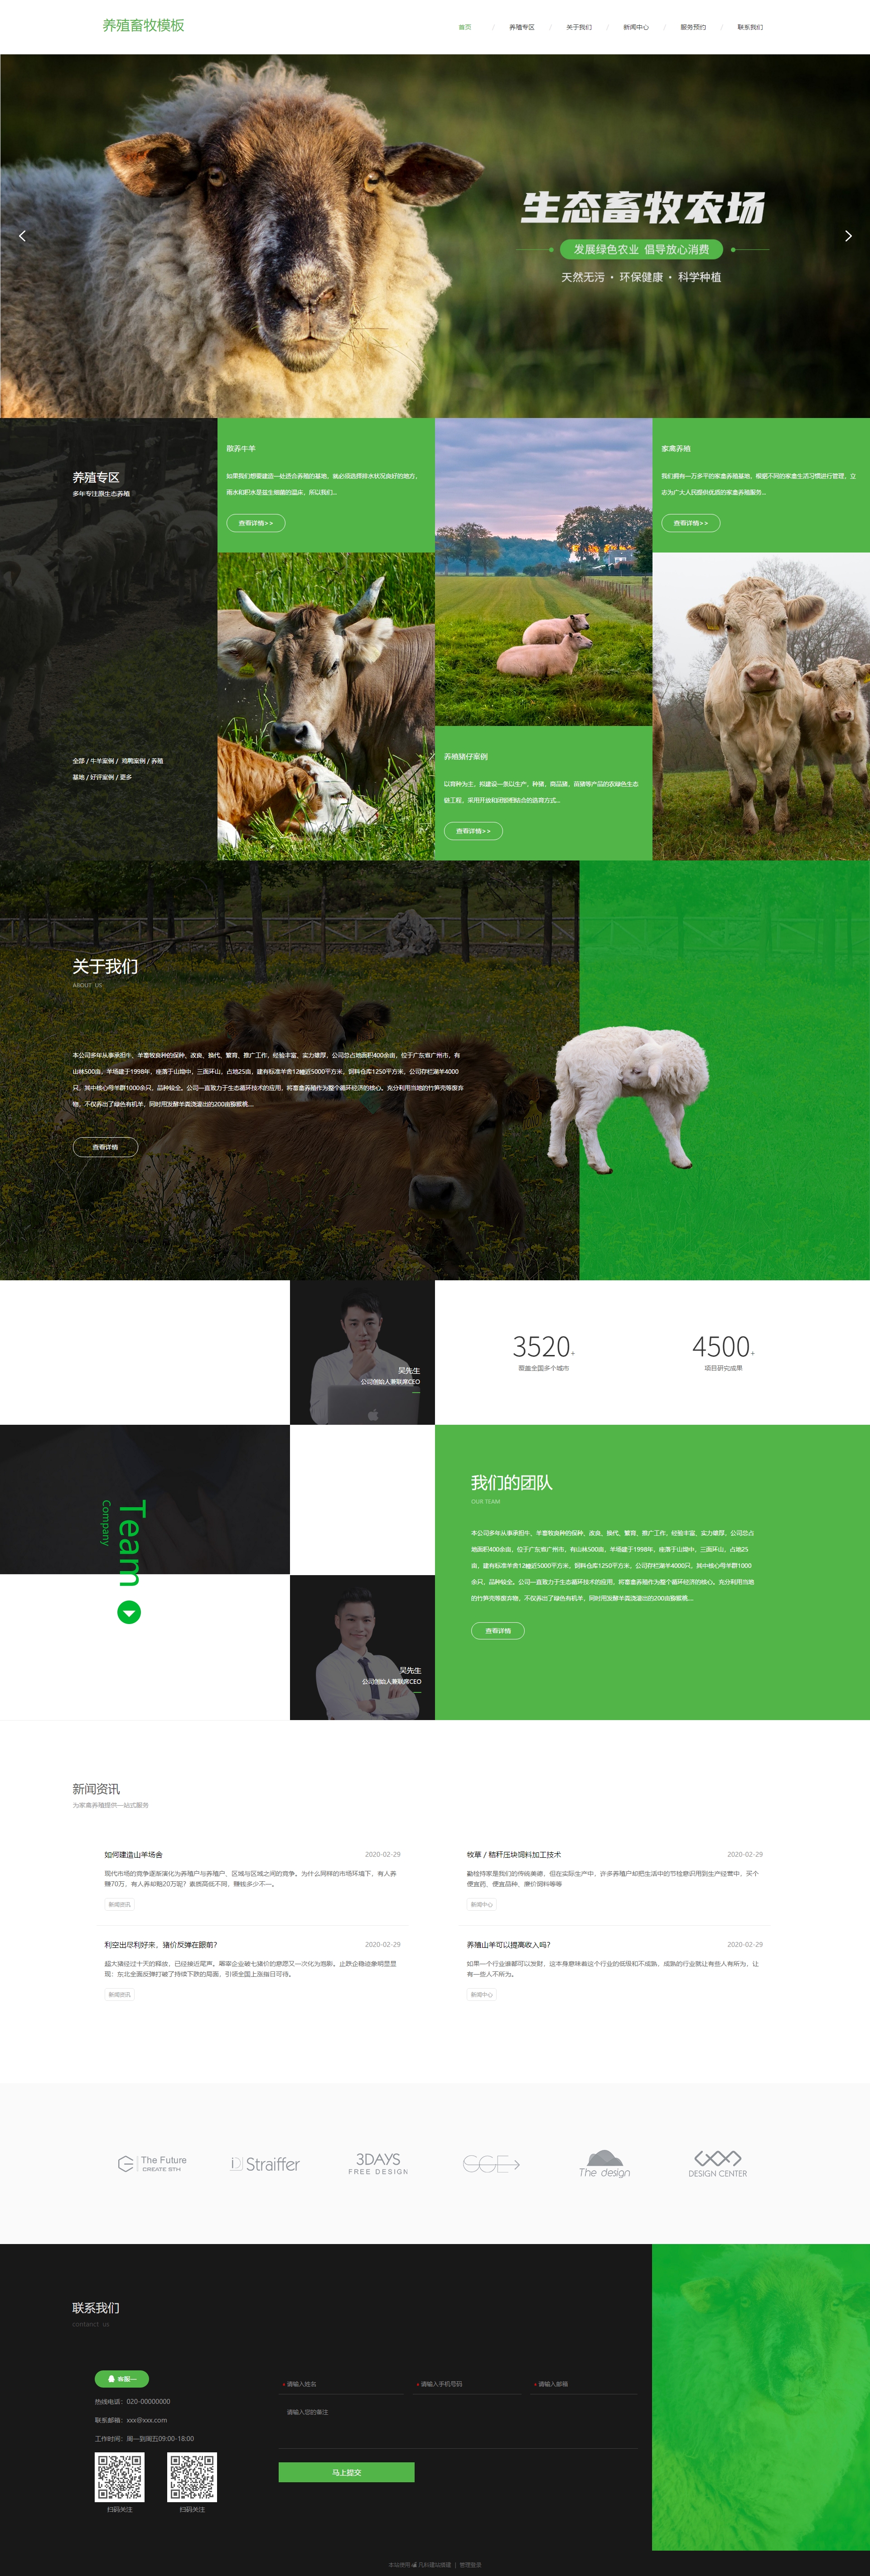 绿色生态畜牧场网站模板